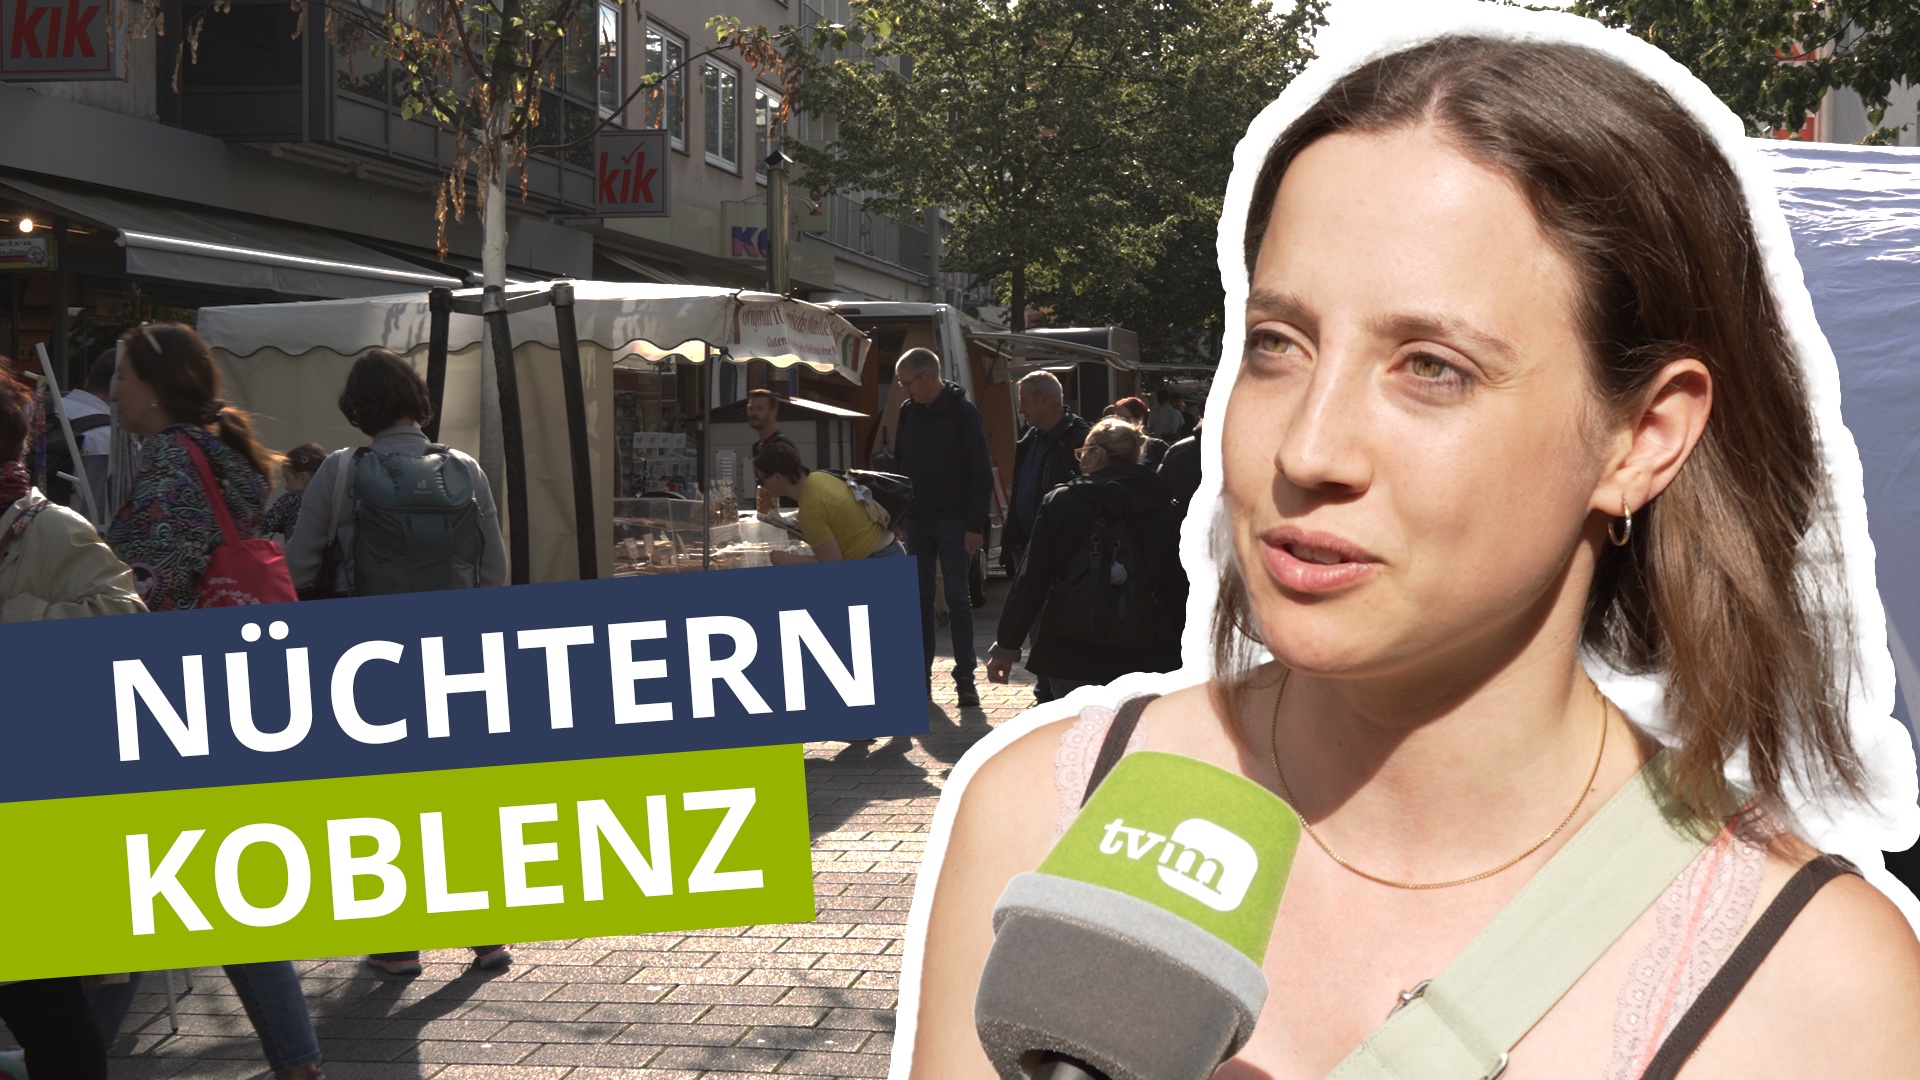 Zwischen Essen, Musik und alkoholfreiem Sekt: Der After-Wochenmarkt Koblenz 